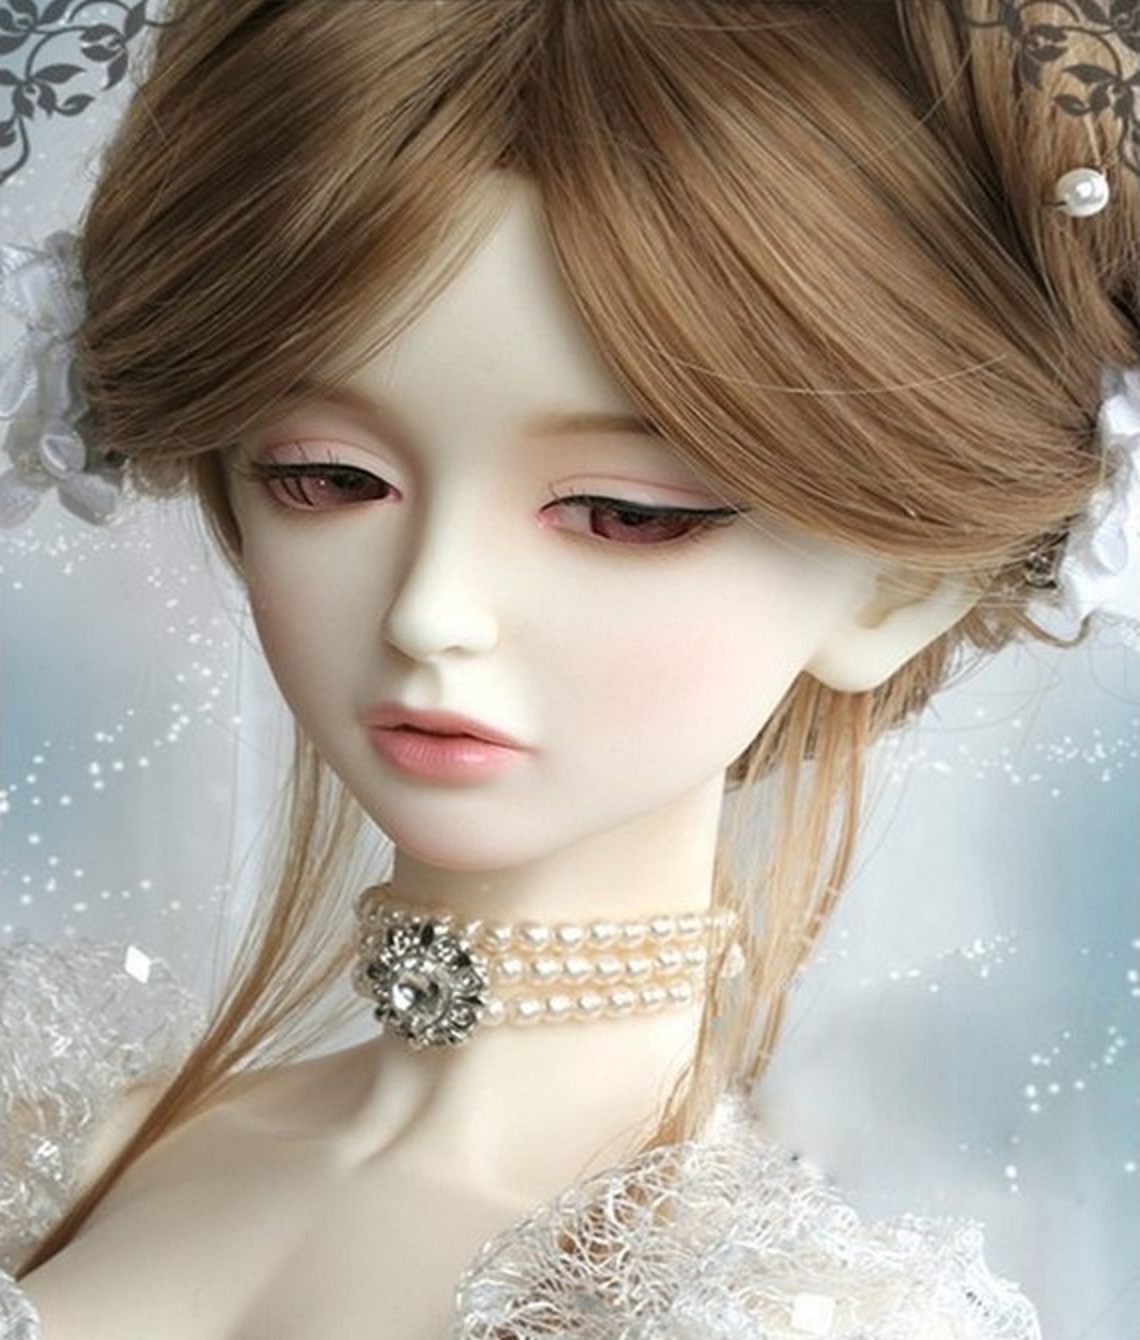  Cute  Baby Barbie  Doll  Wallpaper  Beautiful  Desktop HD 